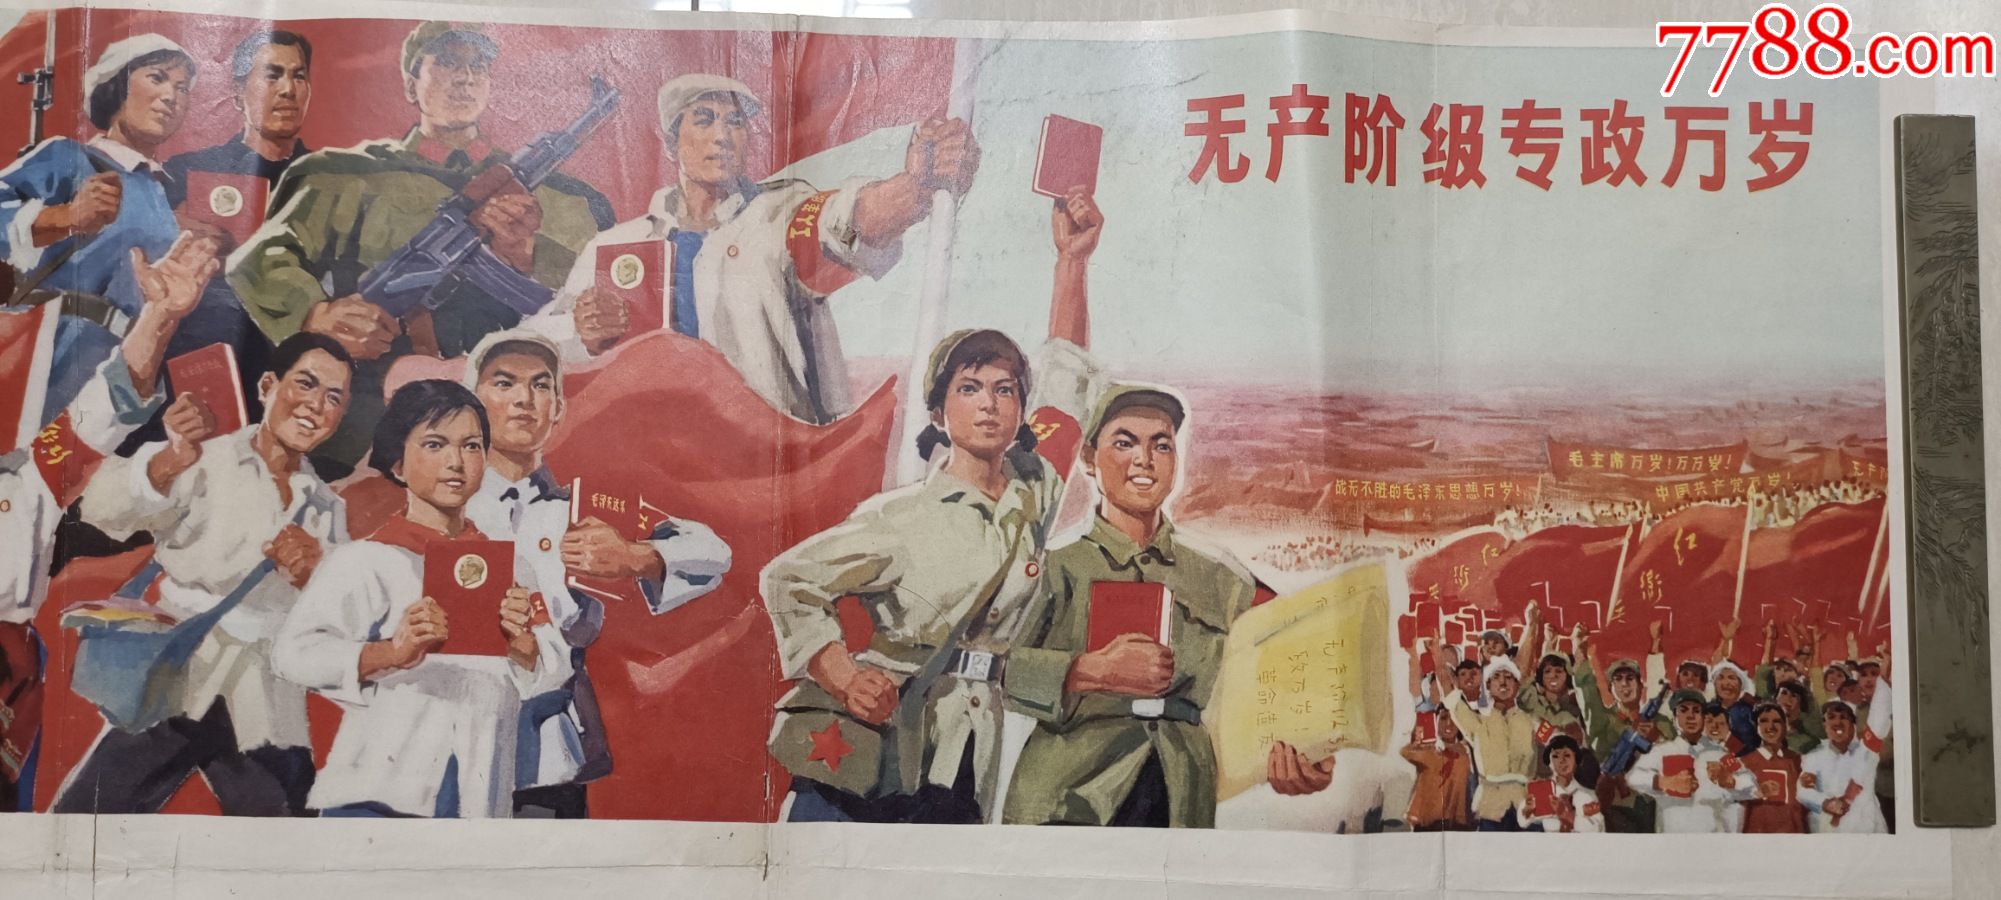 67年人民美术出版社选自首都红兵革命反展览会无产阶级专政万岁宣传画